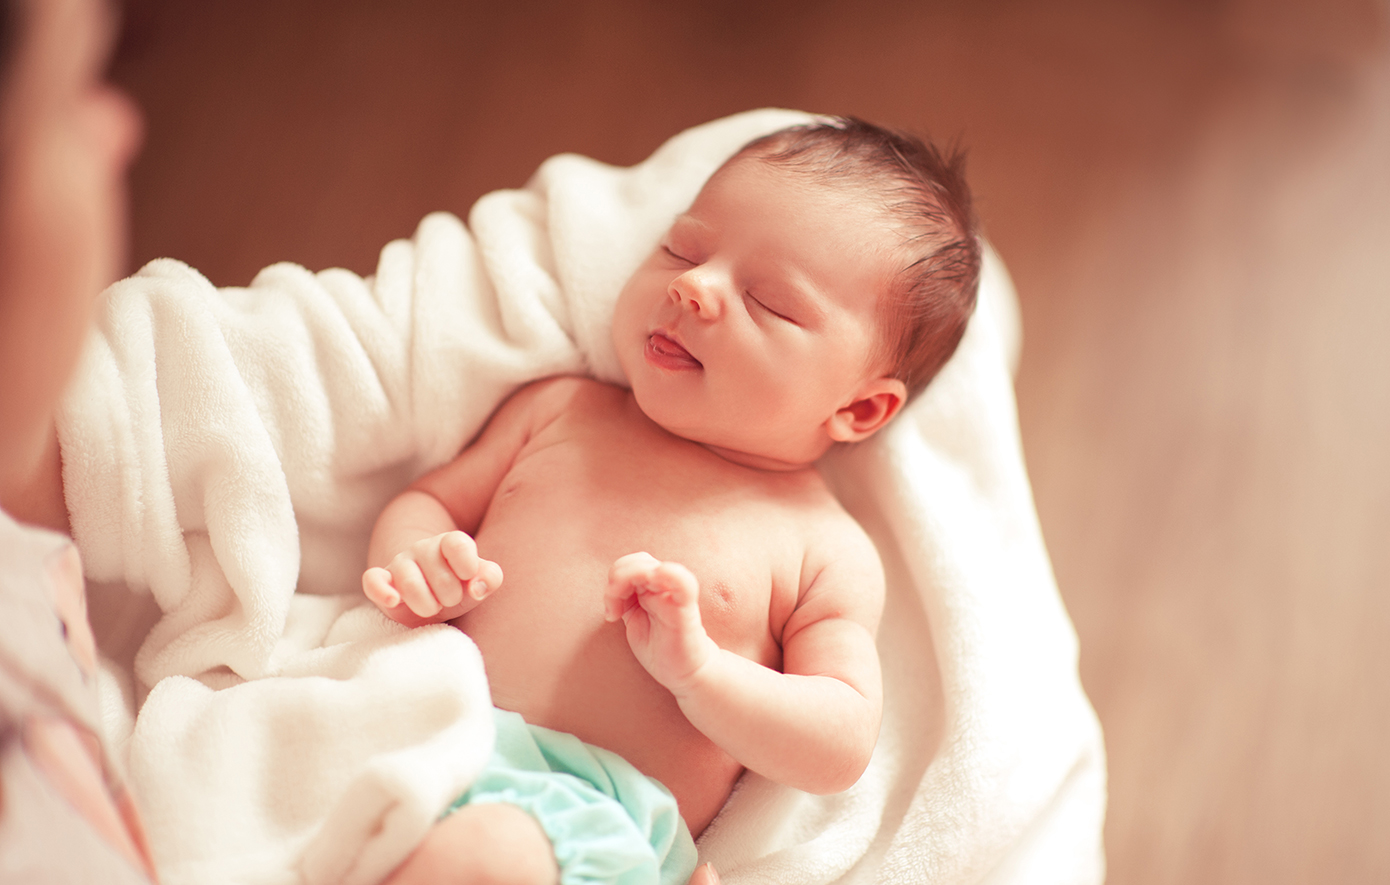 Νοσοκομείο έδωσε λάθος μωρό σε νέα μαμά, γιατί «έμοιαζαν πάρα πολύ»